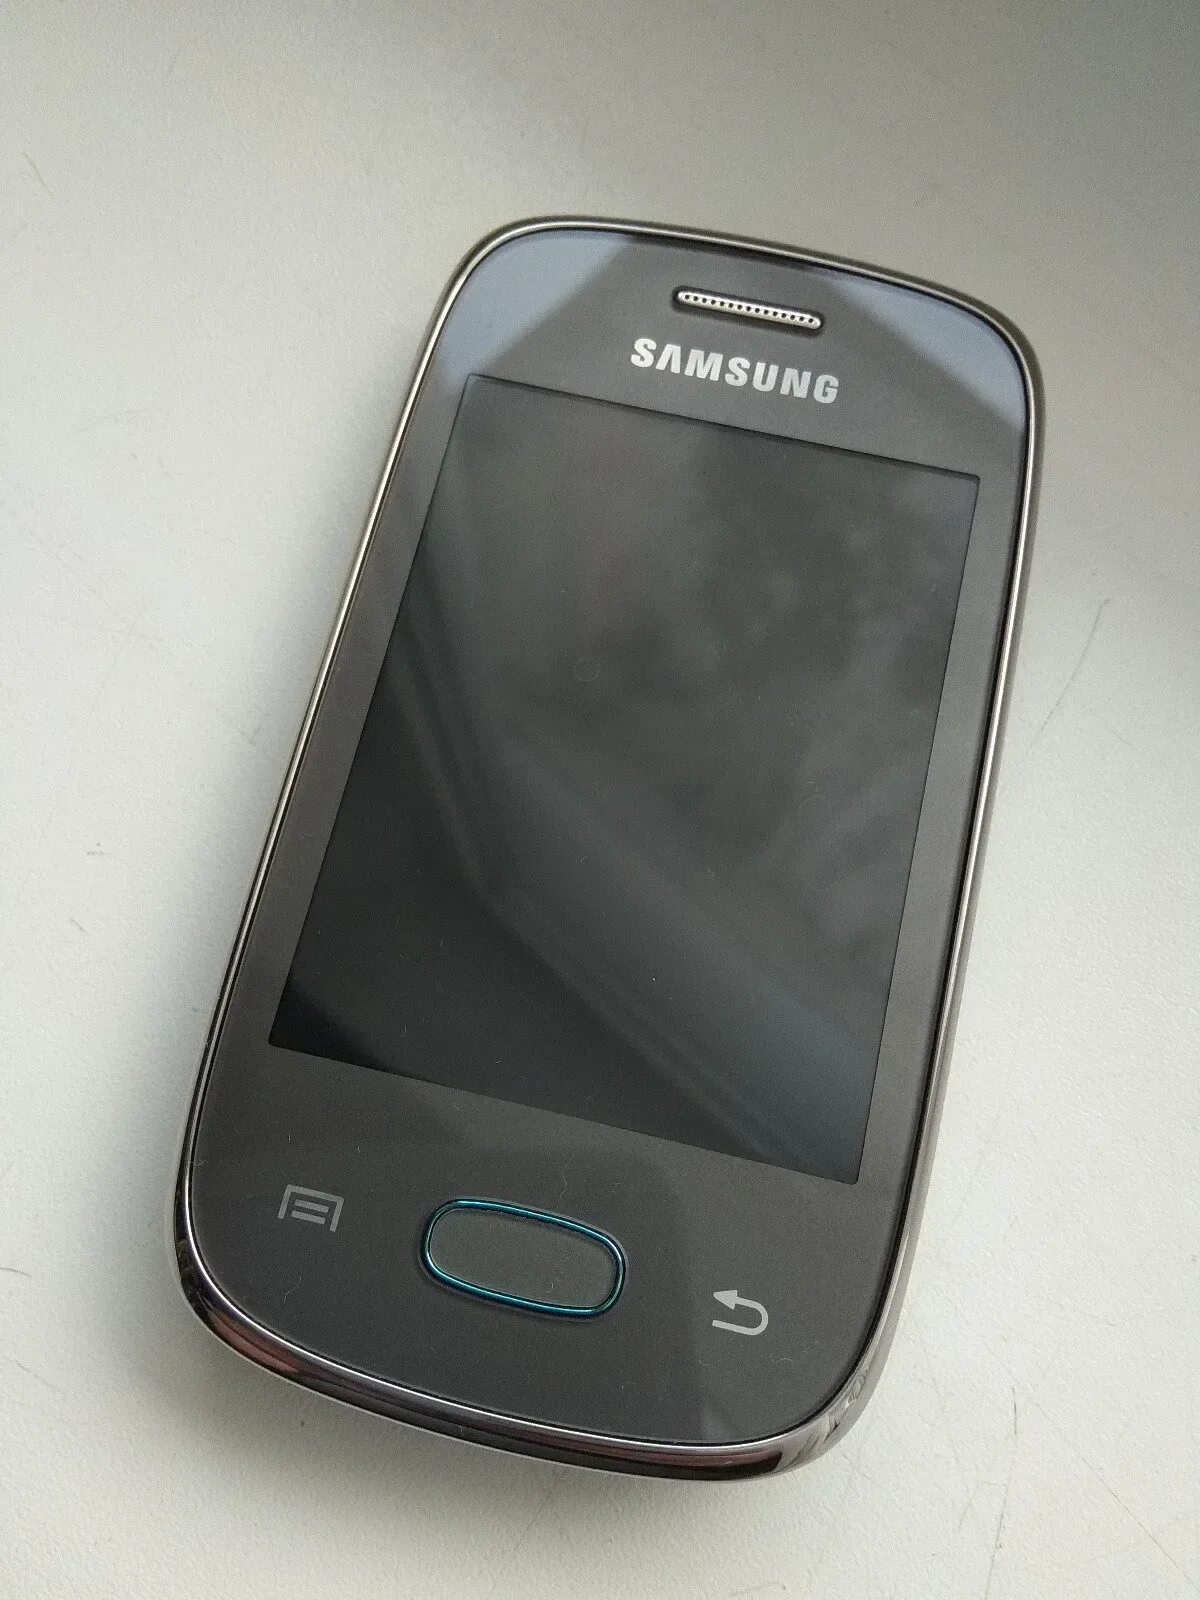 Купить samsung рязань. Samsung Galaxy Pocket gt s5310. Samsung Galaxy Pocket Neo. Samsung Pocket Neo gt-s5310. Samsung Galaxy Pocket Neo s5310.